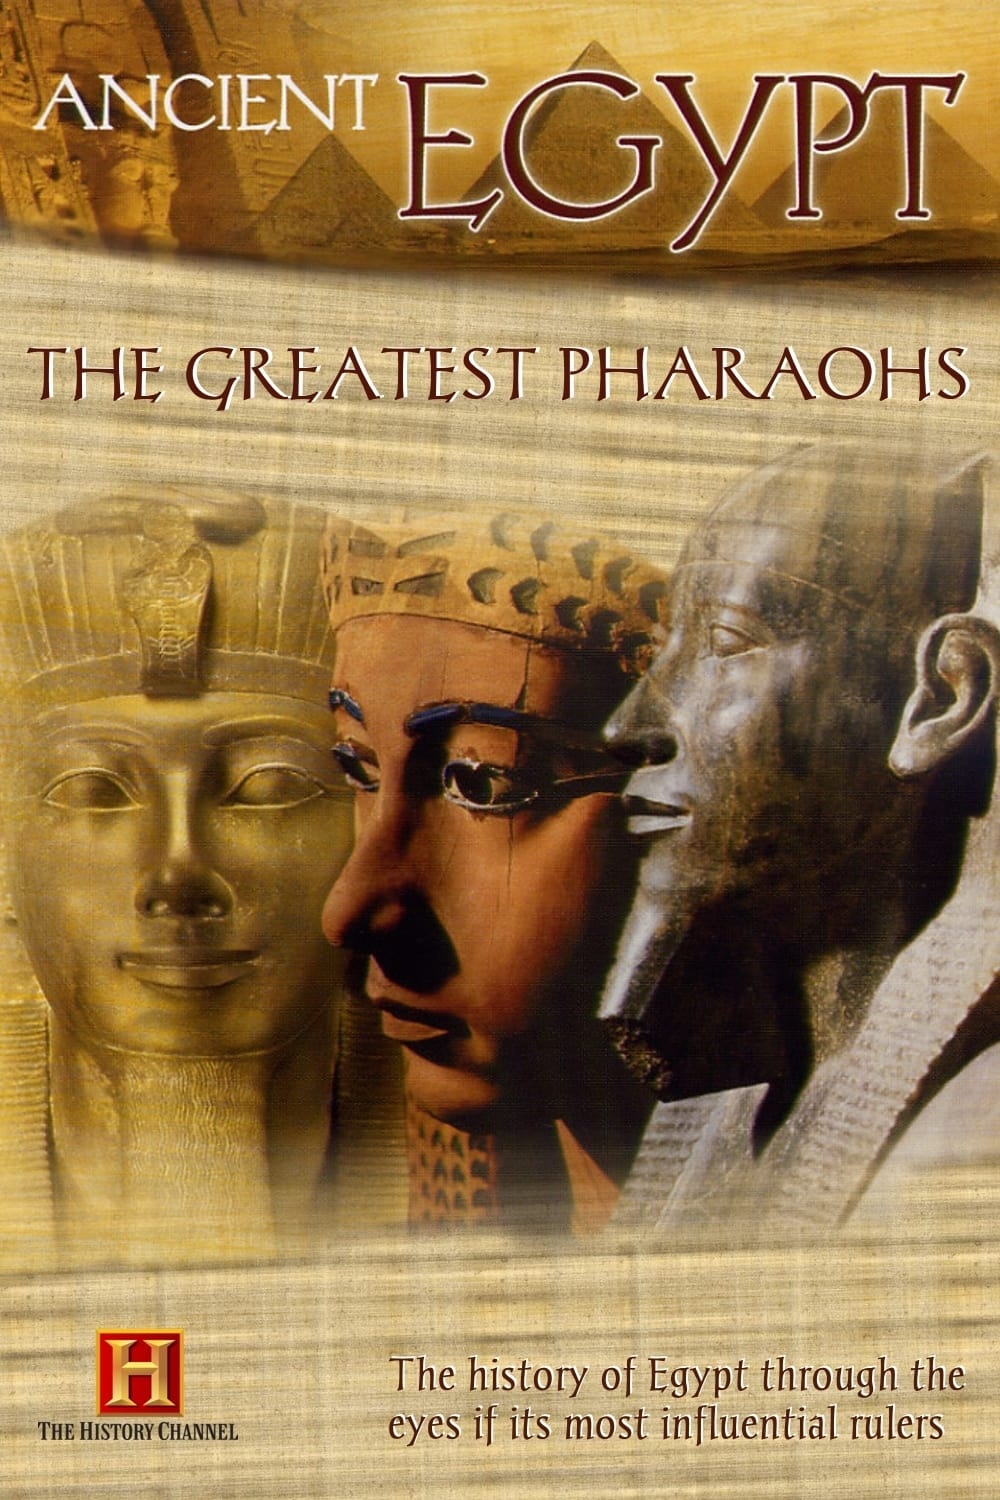 The Greatest Pharaohs (1997)